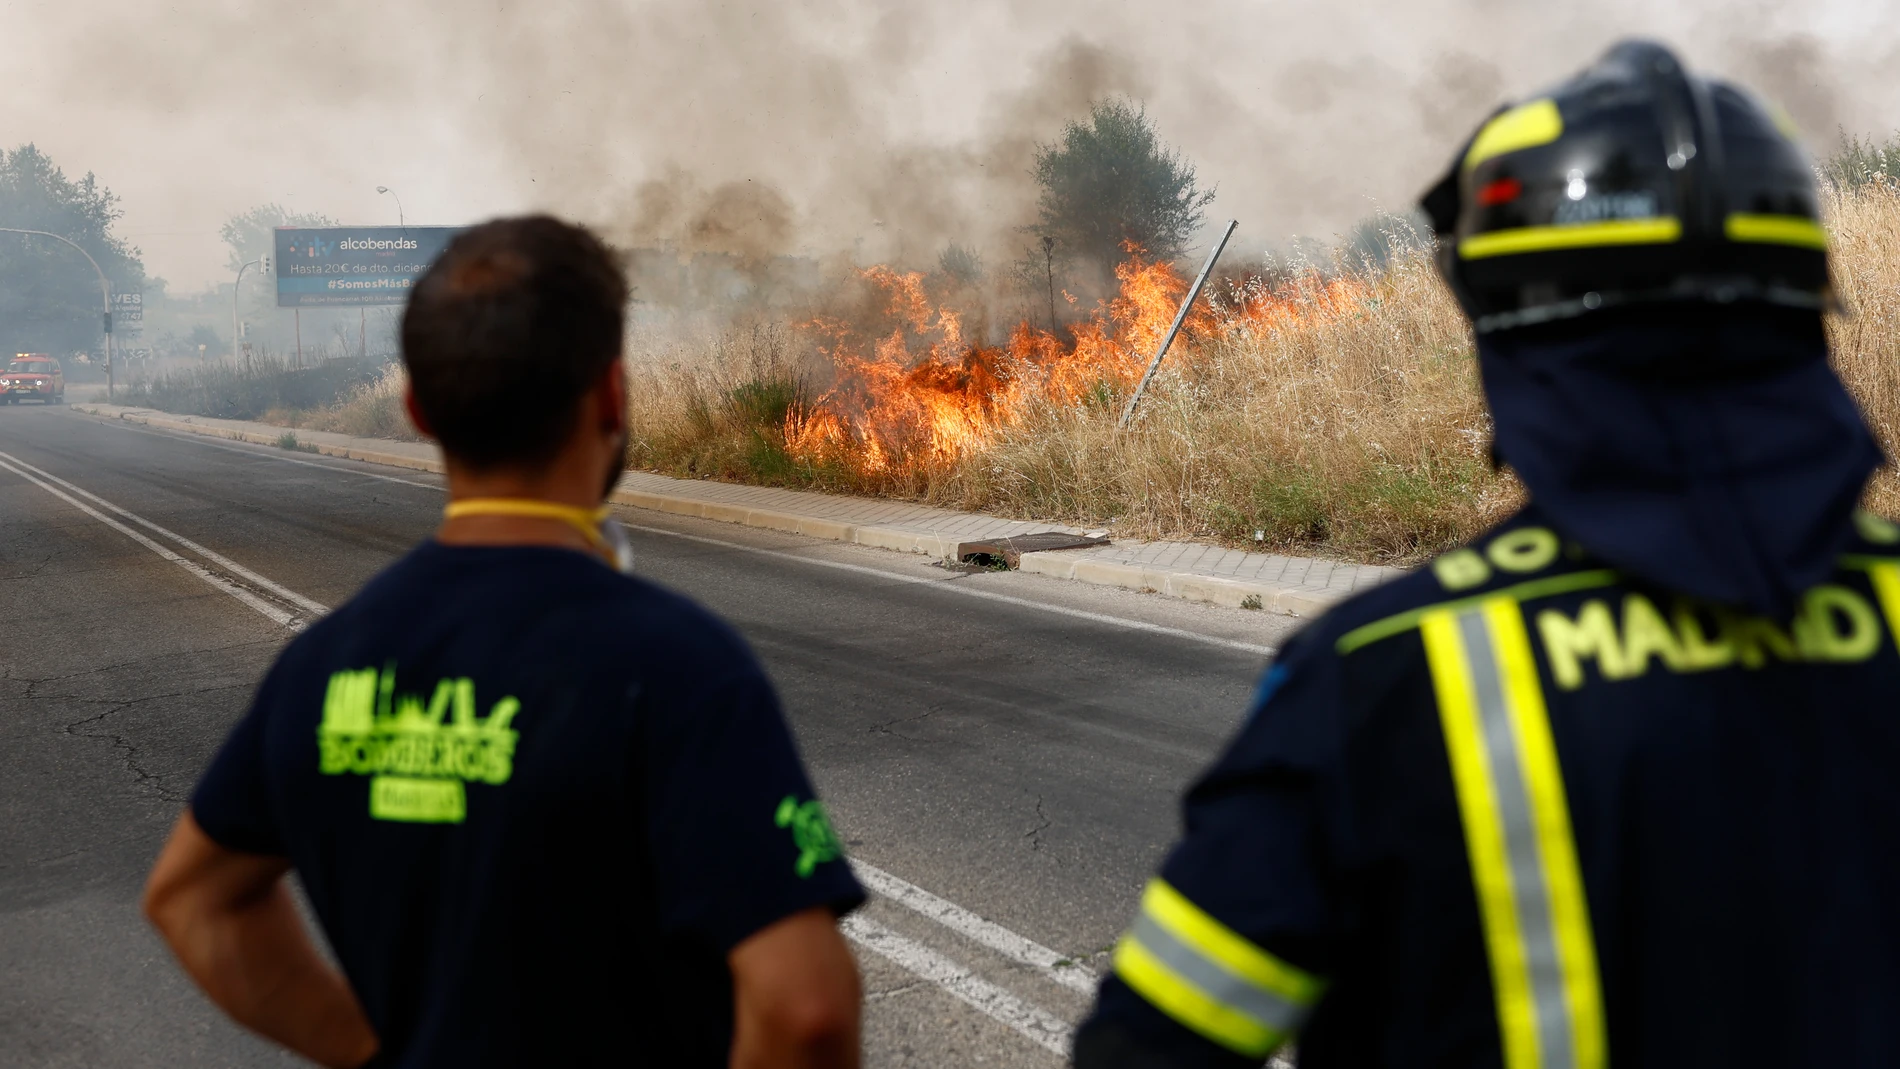 Efectivos del cuerpo de bomberos trabajaron en las labores de extinción del incendio que se declaró este miércoles en el área residencial de Las Tablas, en Madrid